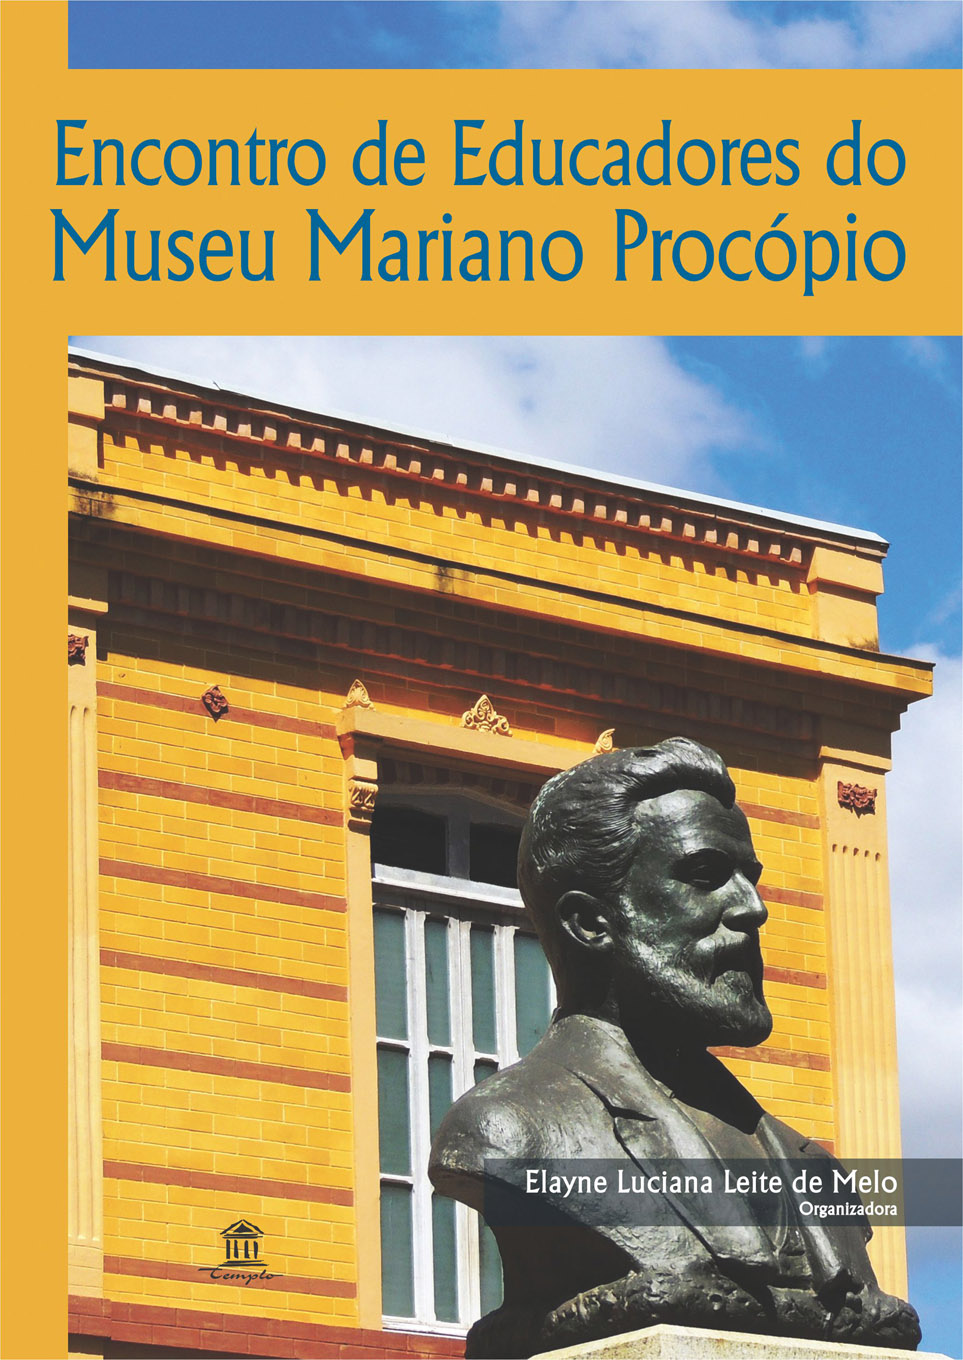 Portal de Notcias PJF | Museu promove palestra sobre Acesso virtual aos museus e lana livro do projeto Encontro de Educadores | MUSEU MARIANO PROCPIO - 17/4/2015